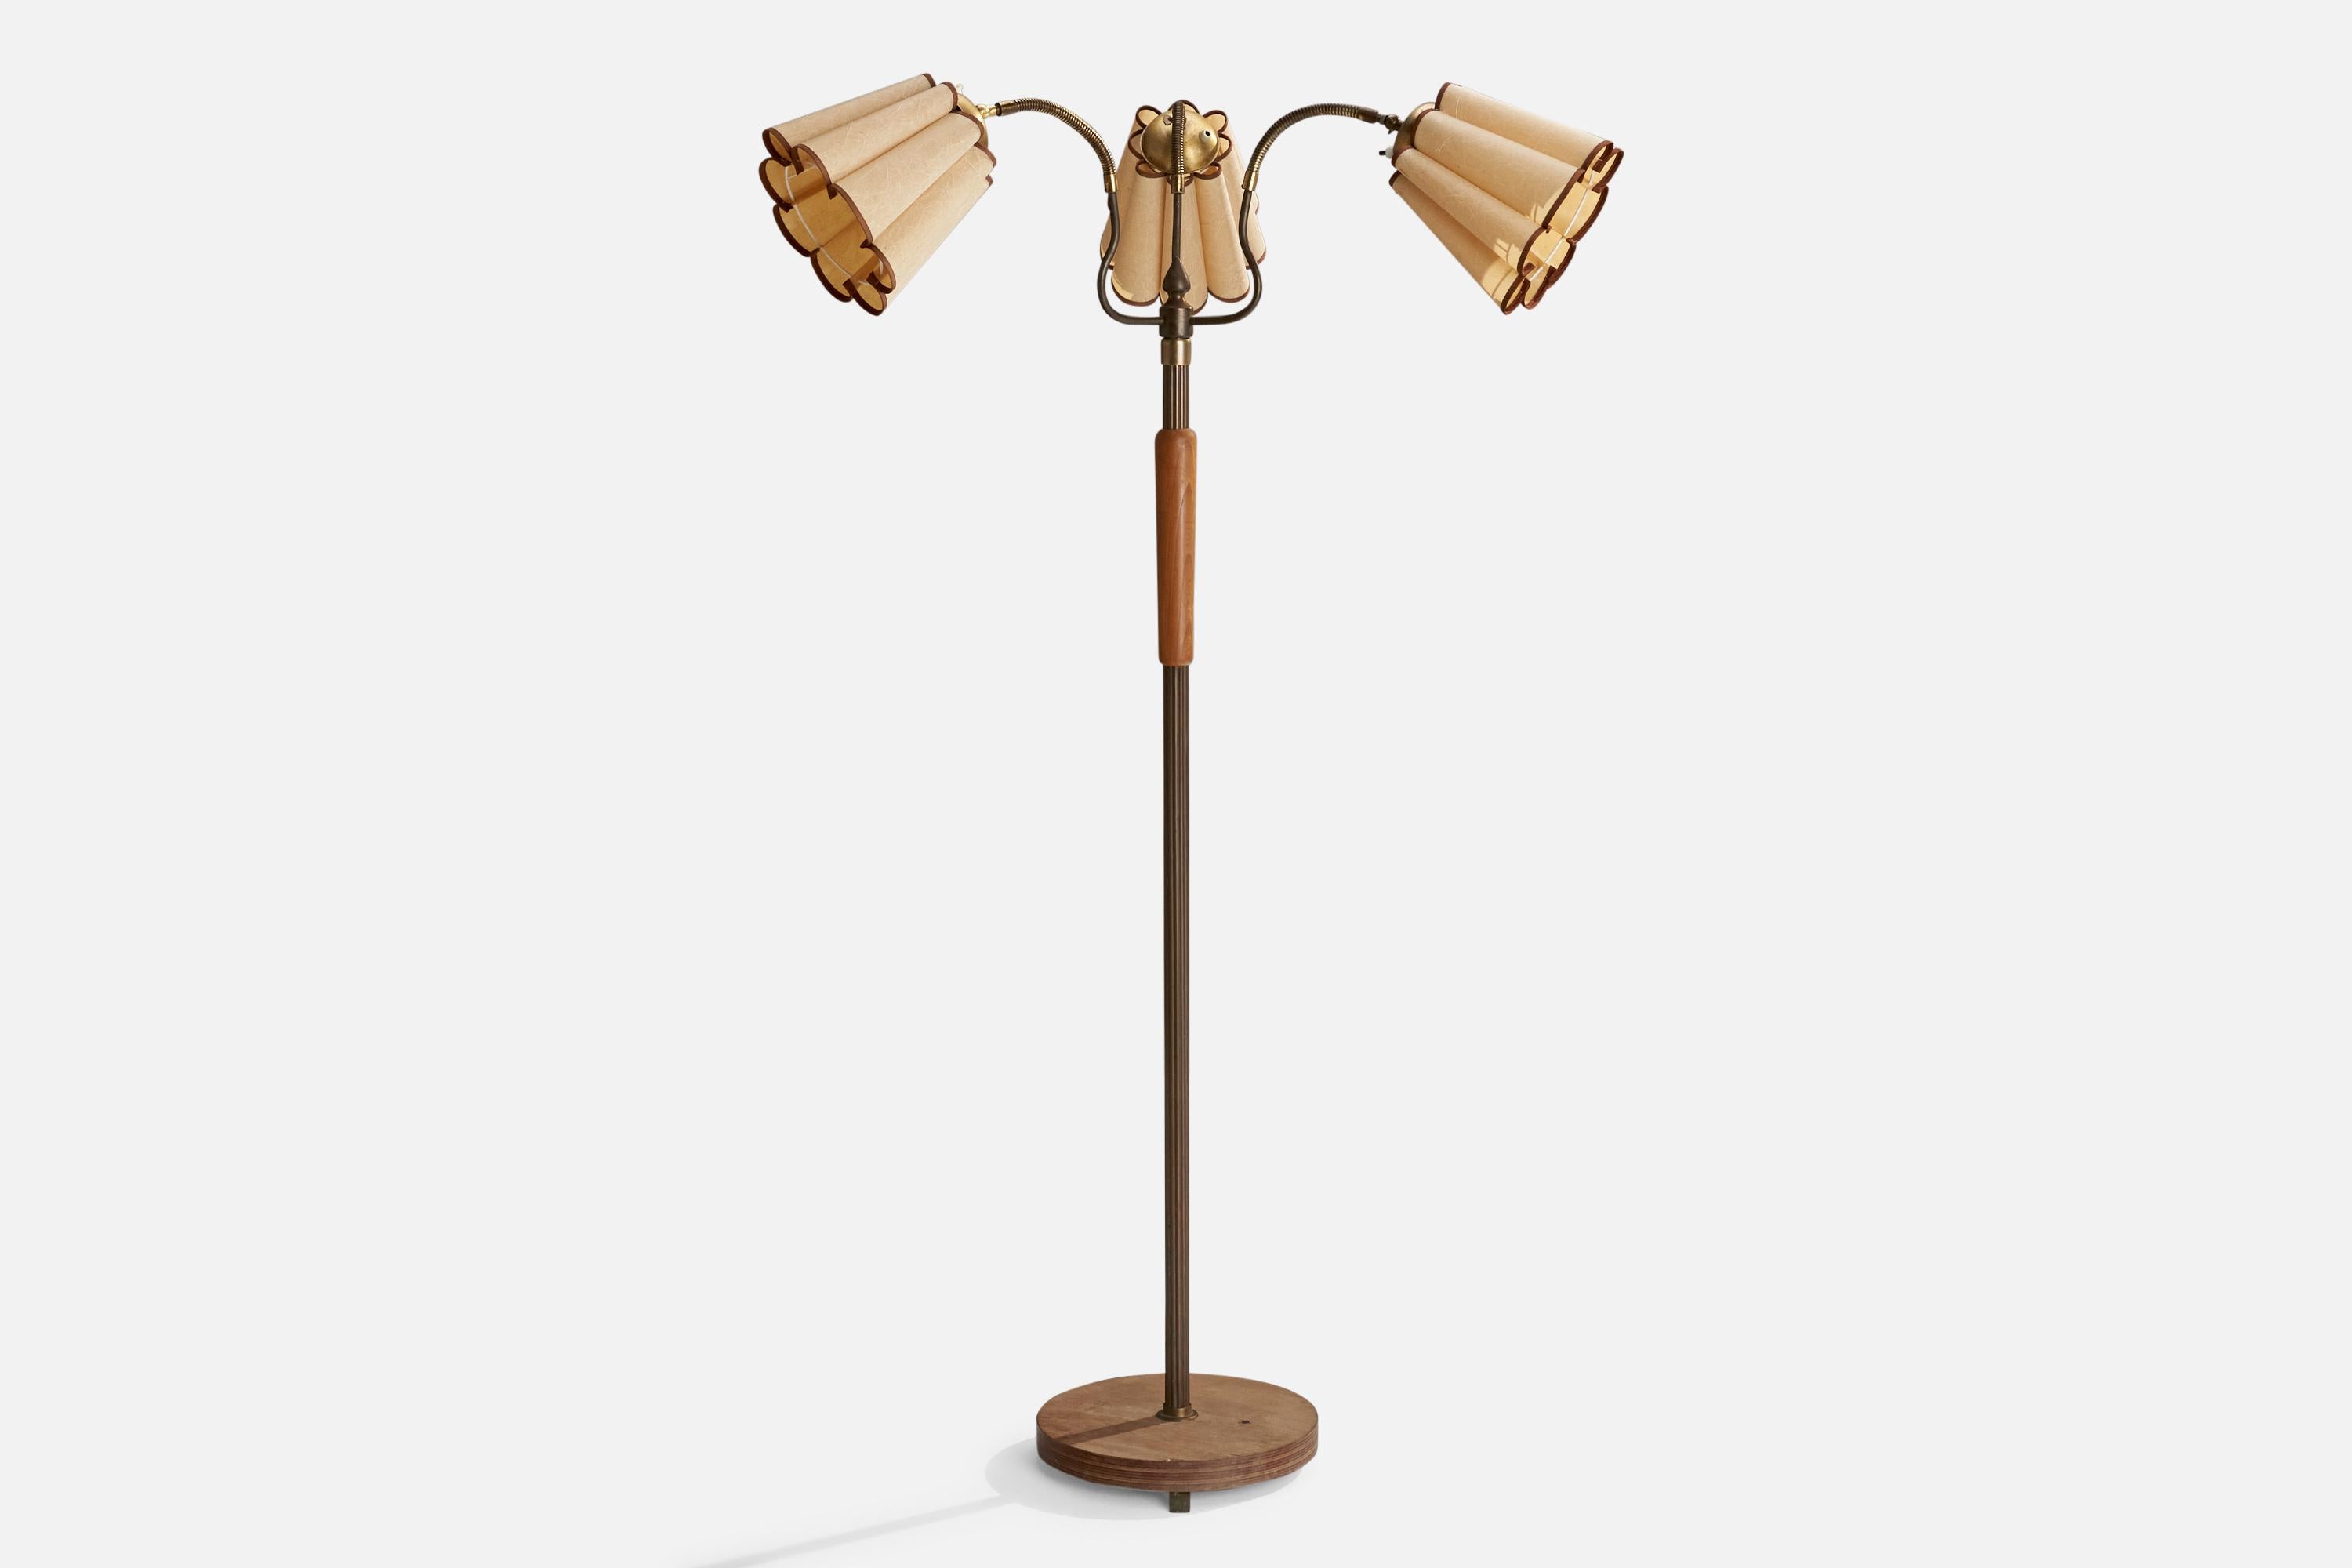 Verstellbare dreiarmige Stehlampe aus Messing, Ulme und Papier, entworfen und hergestellt in Schweden, 1940er Jahre.

Abmessungen variabel

Gesamtabmessungen (Zoll): 63